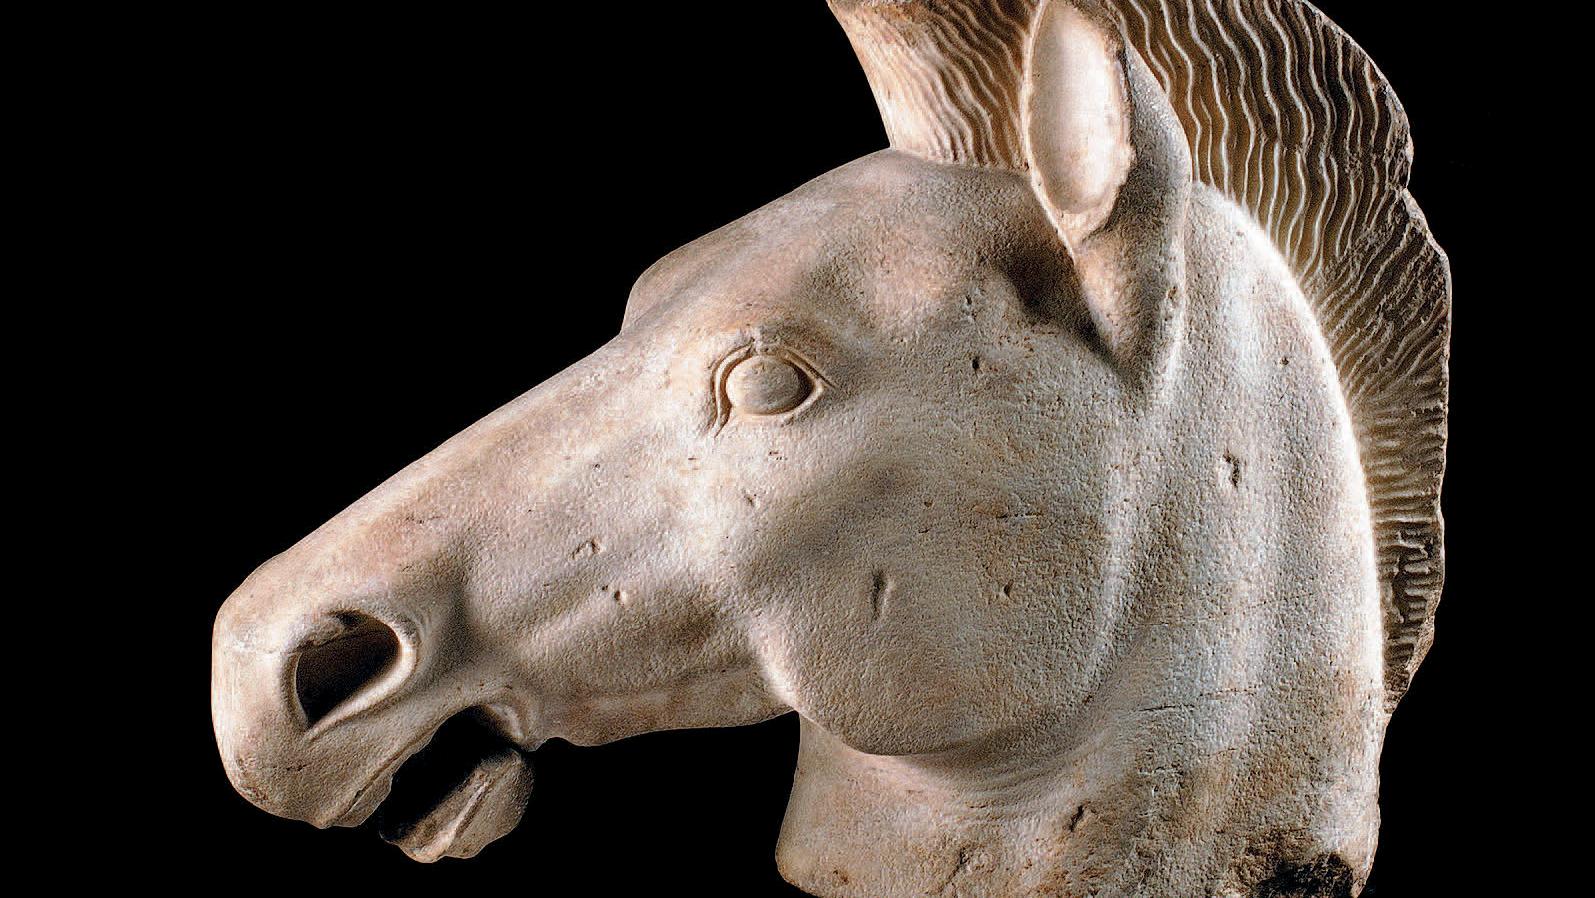 Grèce, Attique, fin du VIe siècle avant Jésus-Christ. Tête de cheval grandeur nature... Le marché de l'art grec